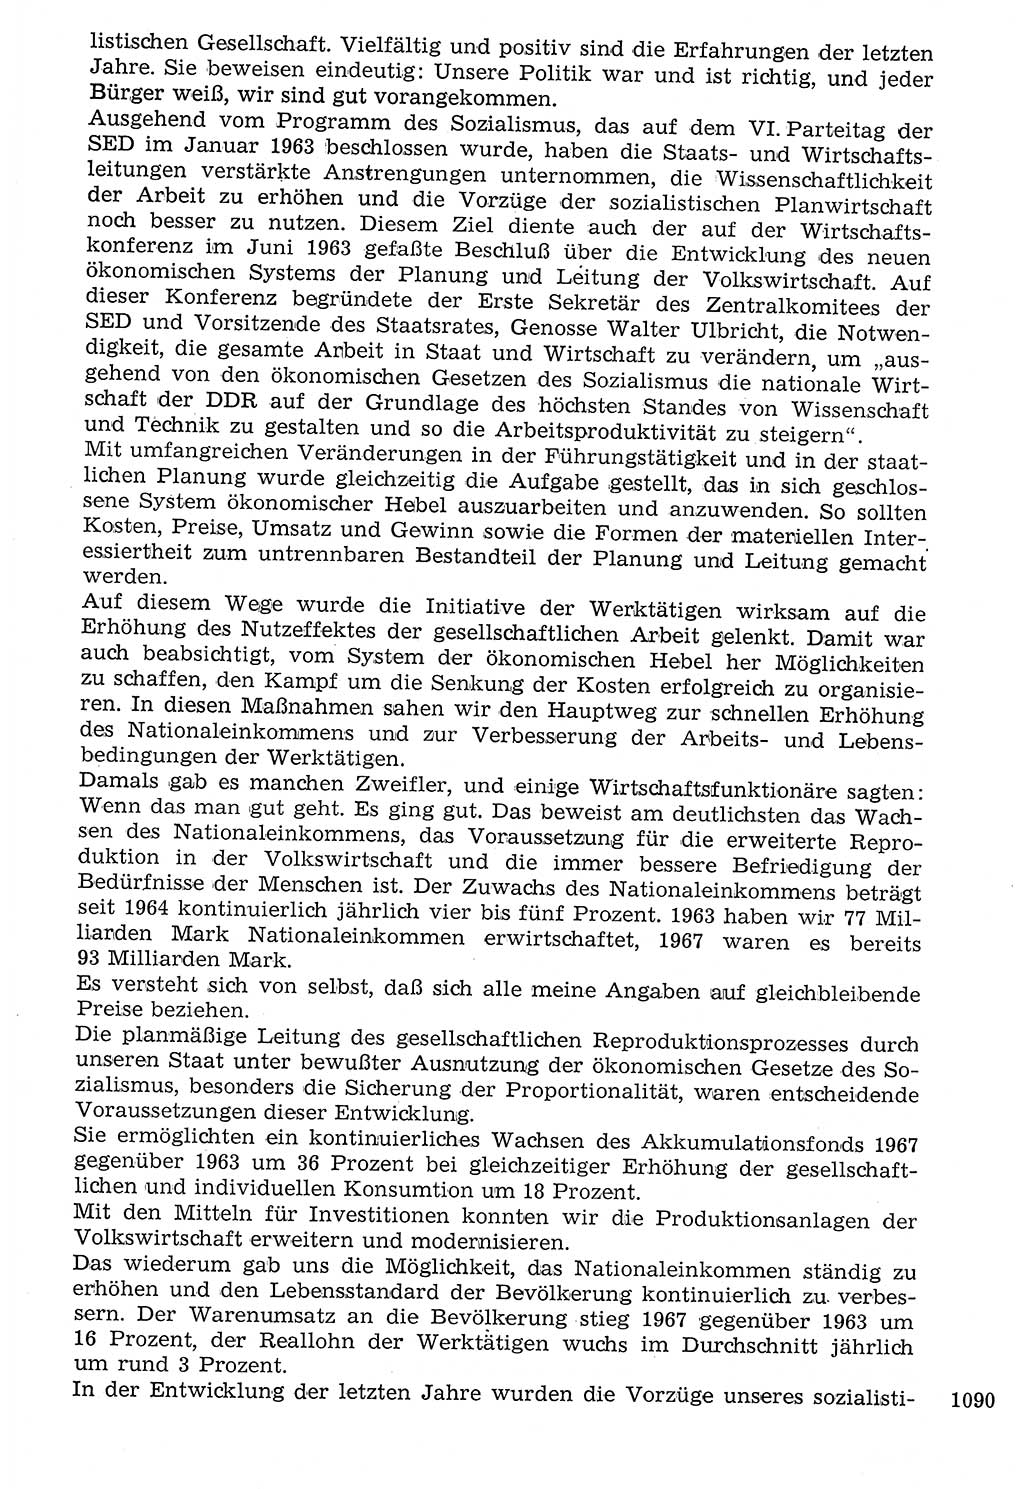 Staat und Recht (StuR), 17. Jahrgang [Deutsche Demokratische Republik (DDR)] 1968, Seite 1090 (StuR DDR 1968, S. 1090)